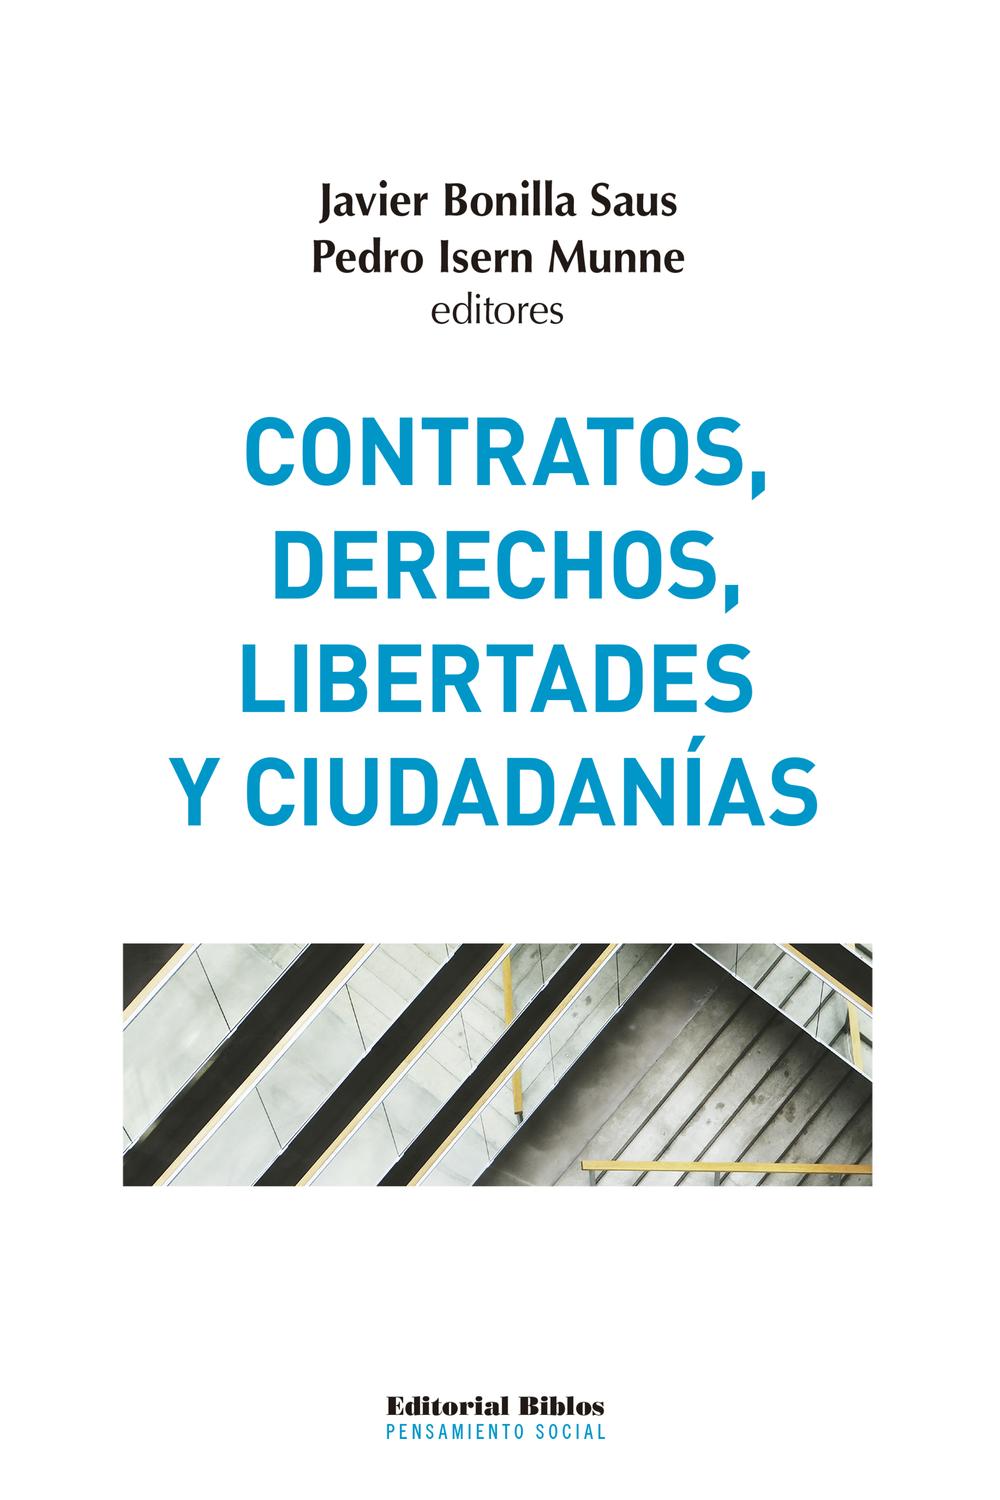 Contratos, derechos, libertades y ciudadanías - Pedro Isern Munne, Javier Bonilla Saus